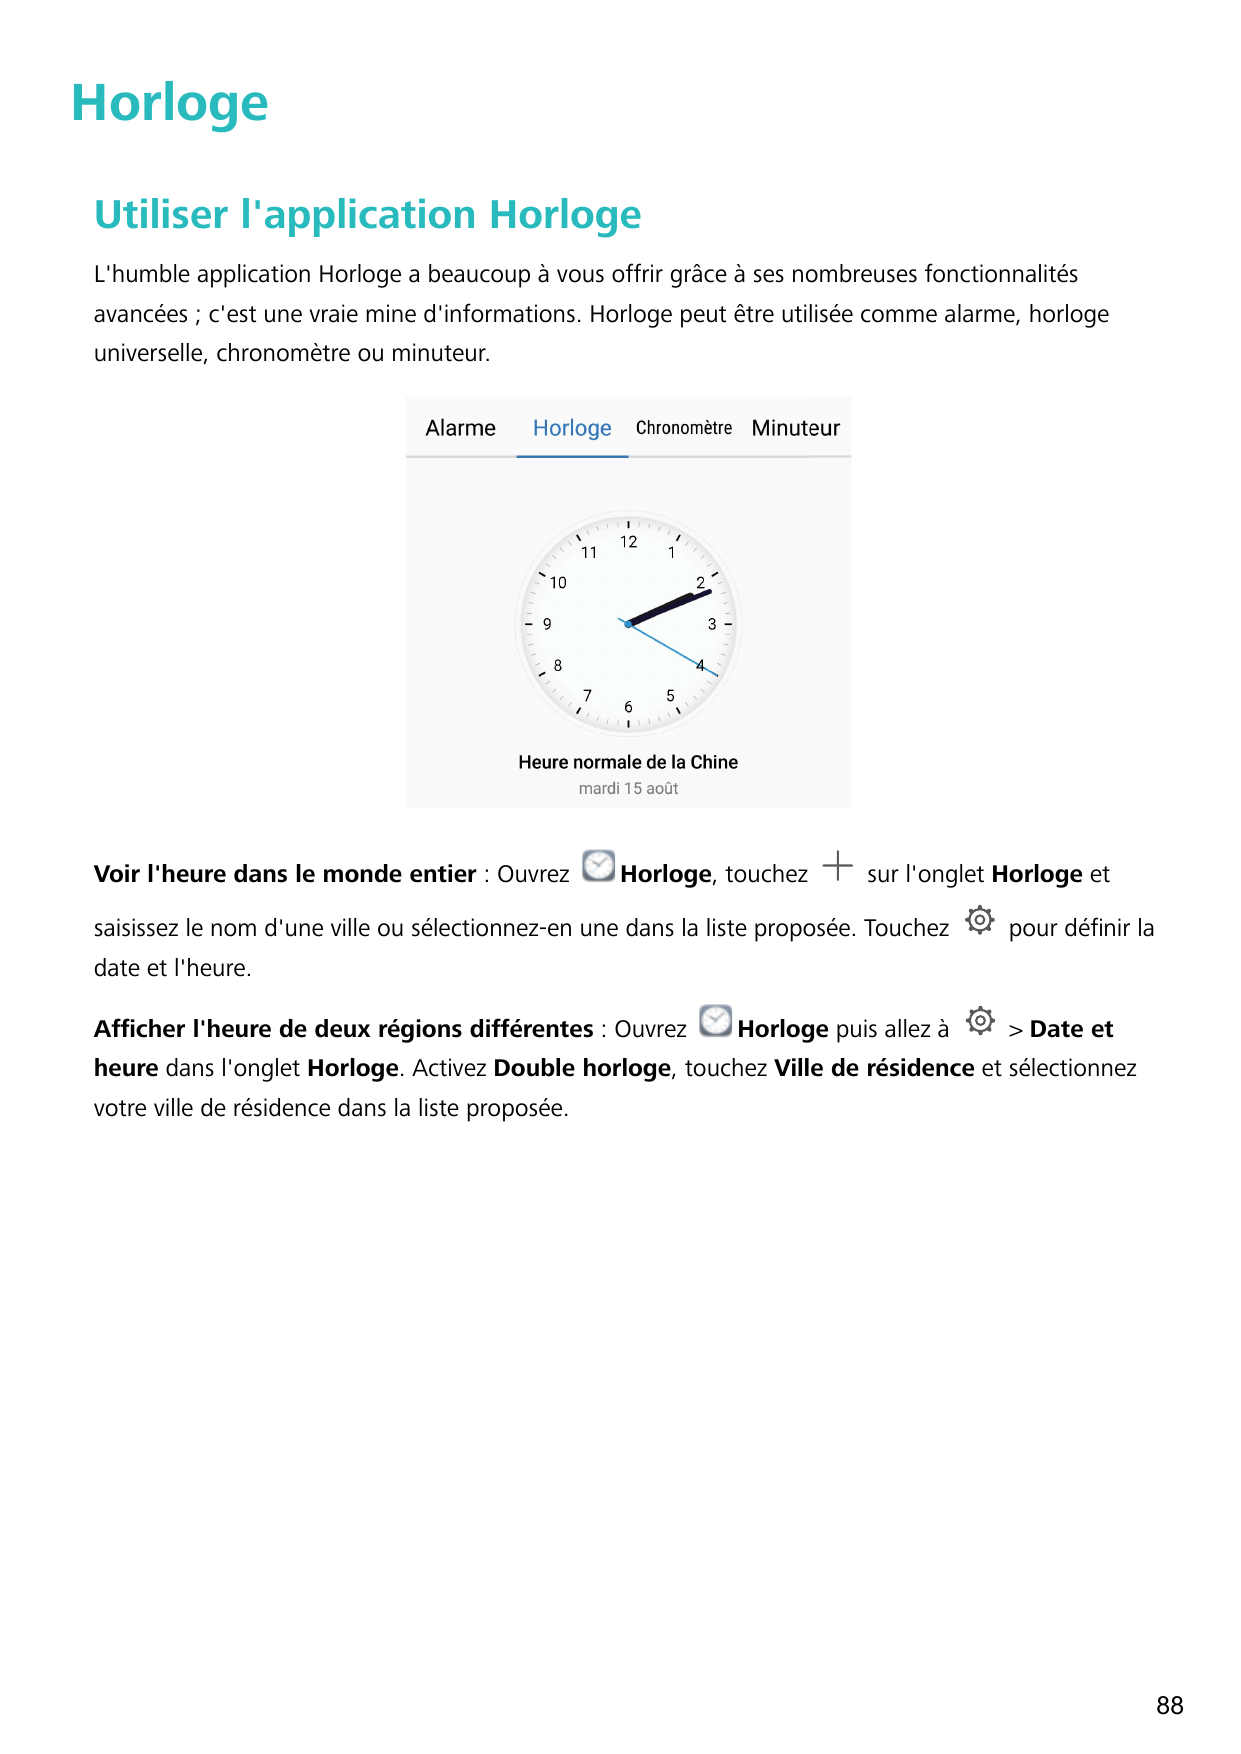 HorlogeUtiliser l'application HorlogeL'humble application Horloge a beaucoup à vous offrir grâce à ses nombreuses fonctionnalité